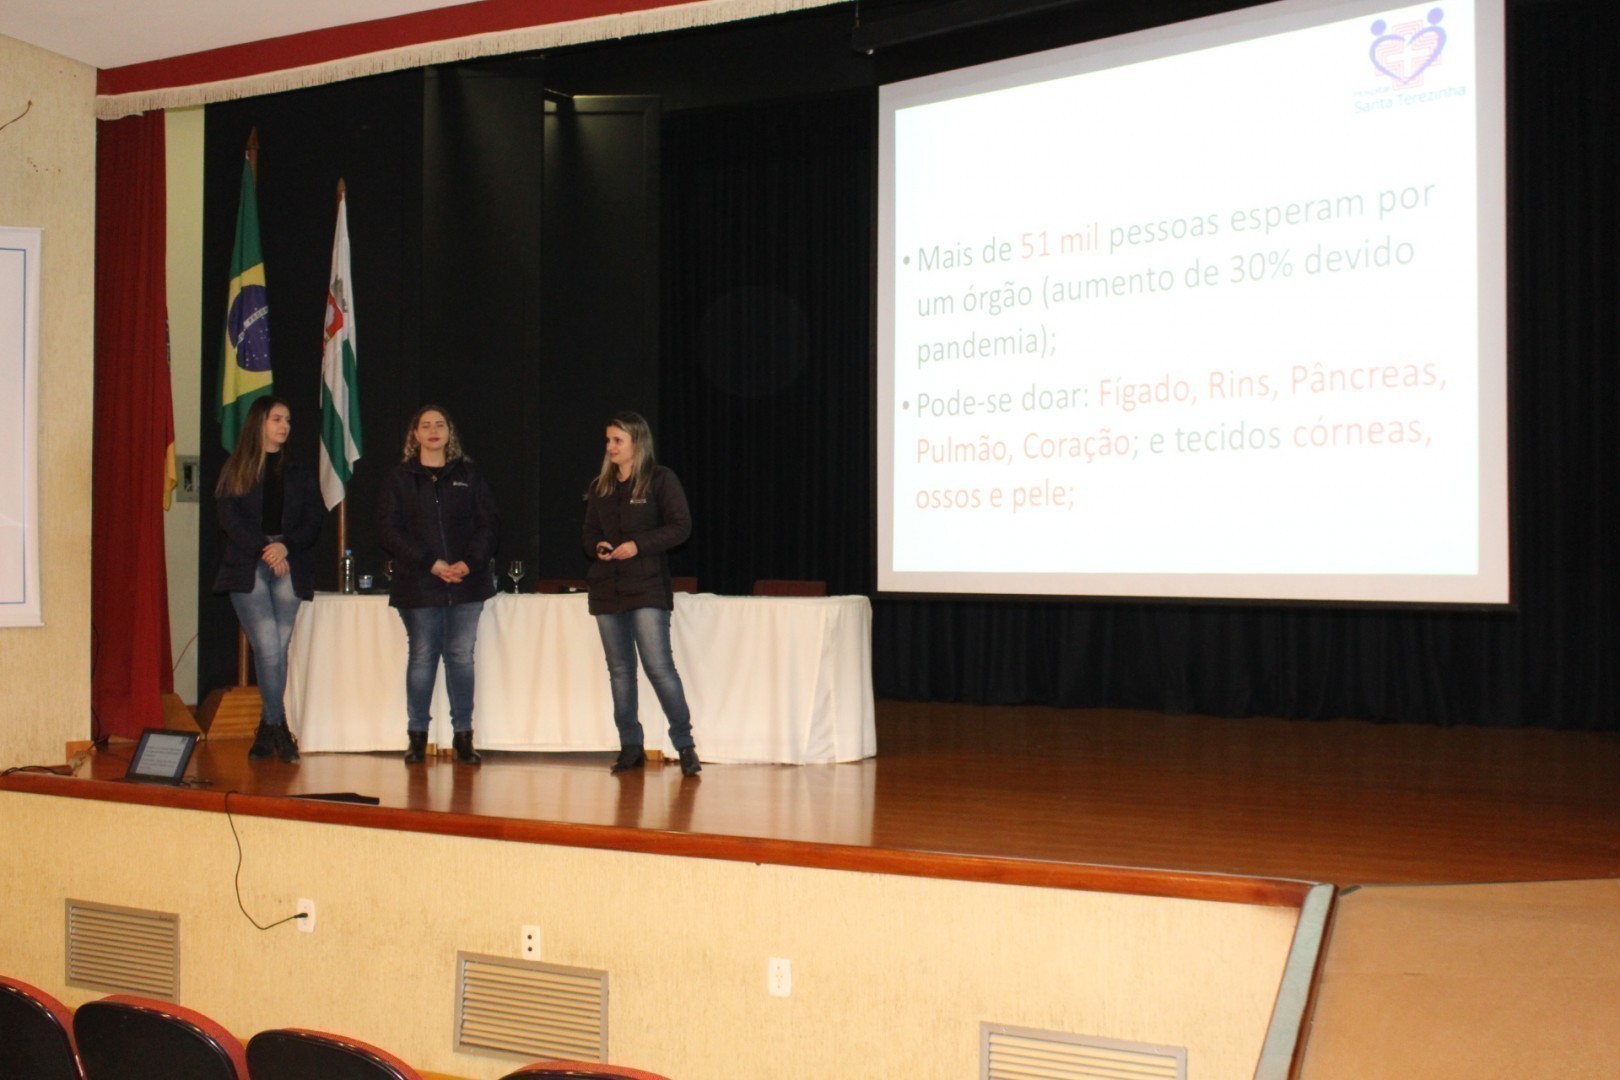 Palestra sobre doação de órgãos foi conduzida pela psicóloga Luana Fontanela e as enfermeiras Caira Weber e Letícia Fontana